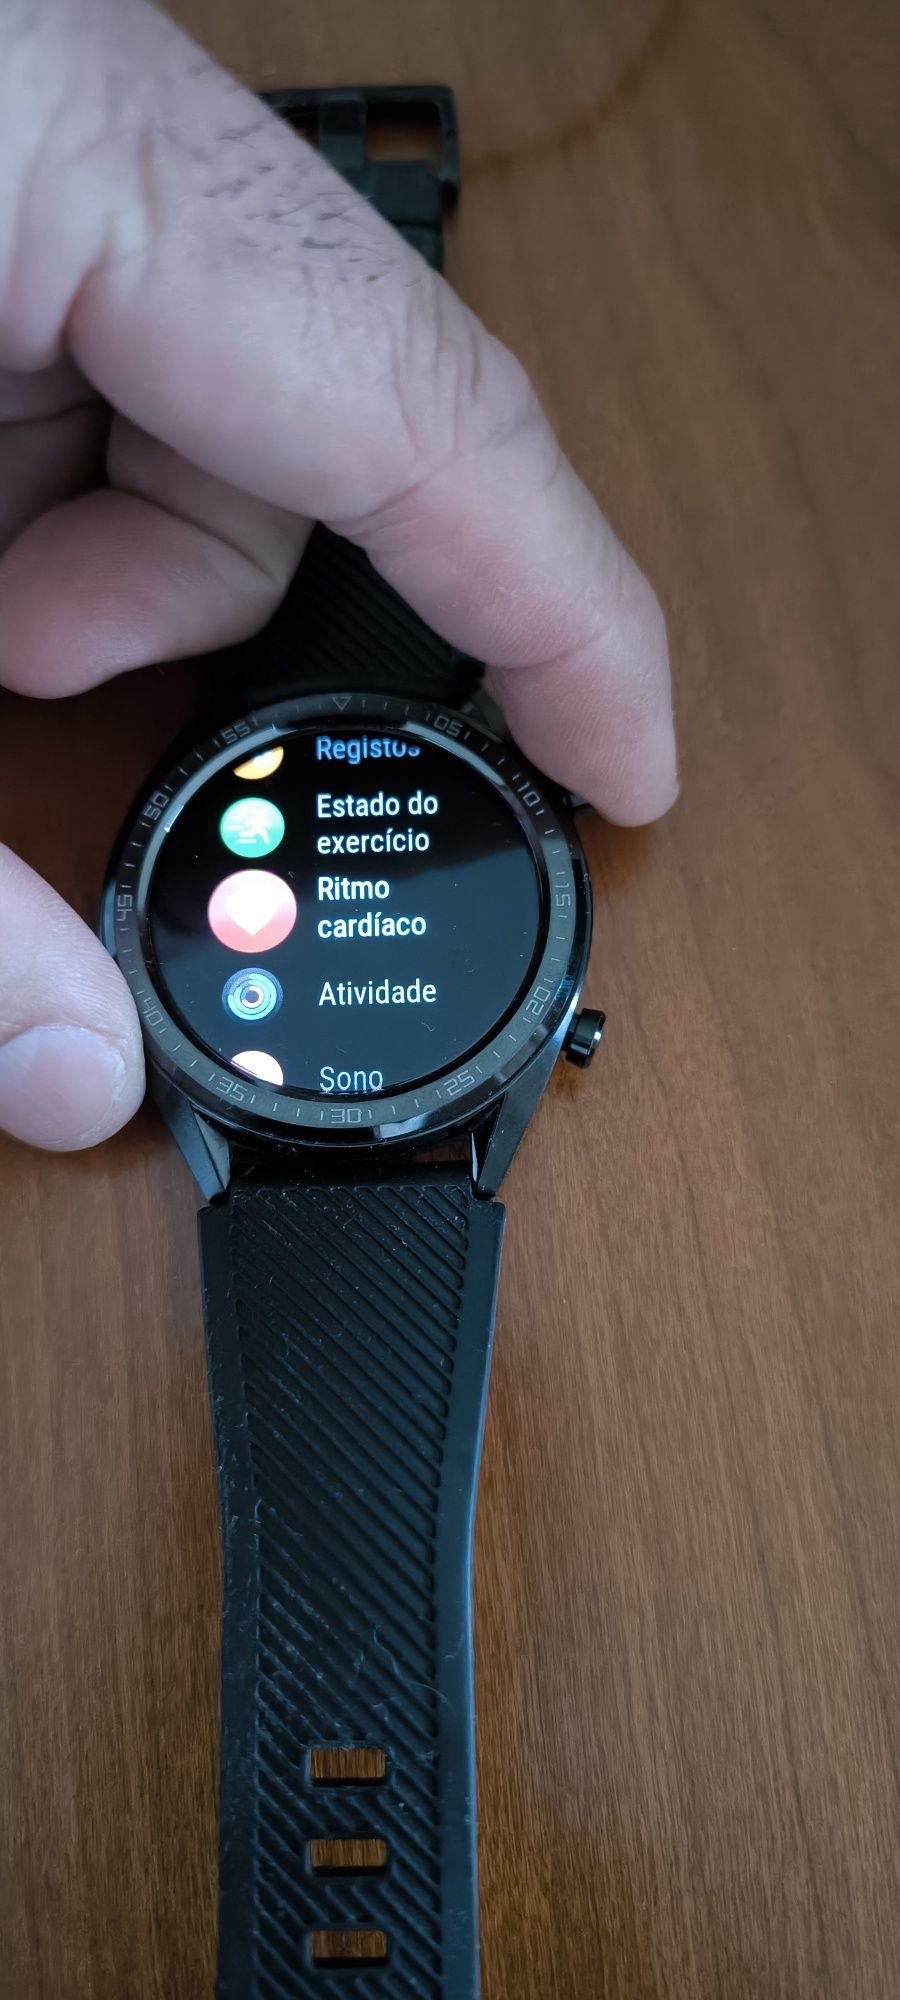 Huawei watch GT smartwatch